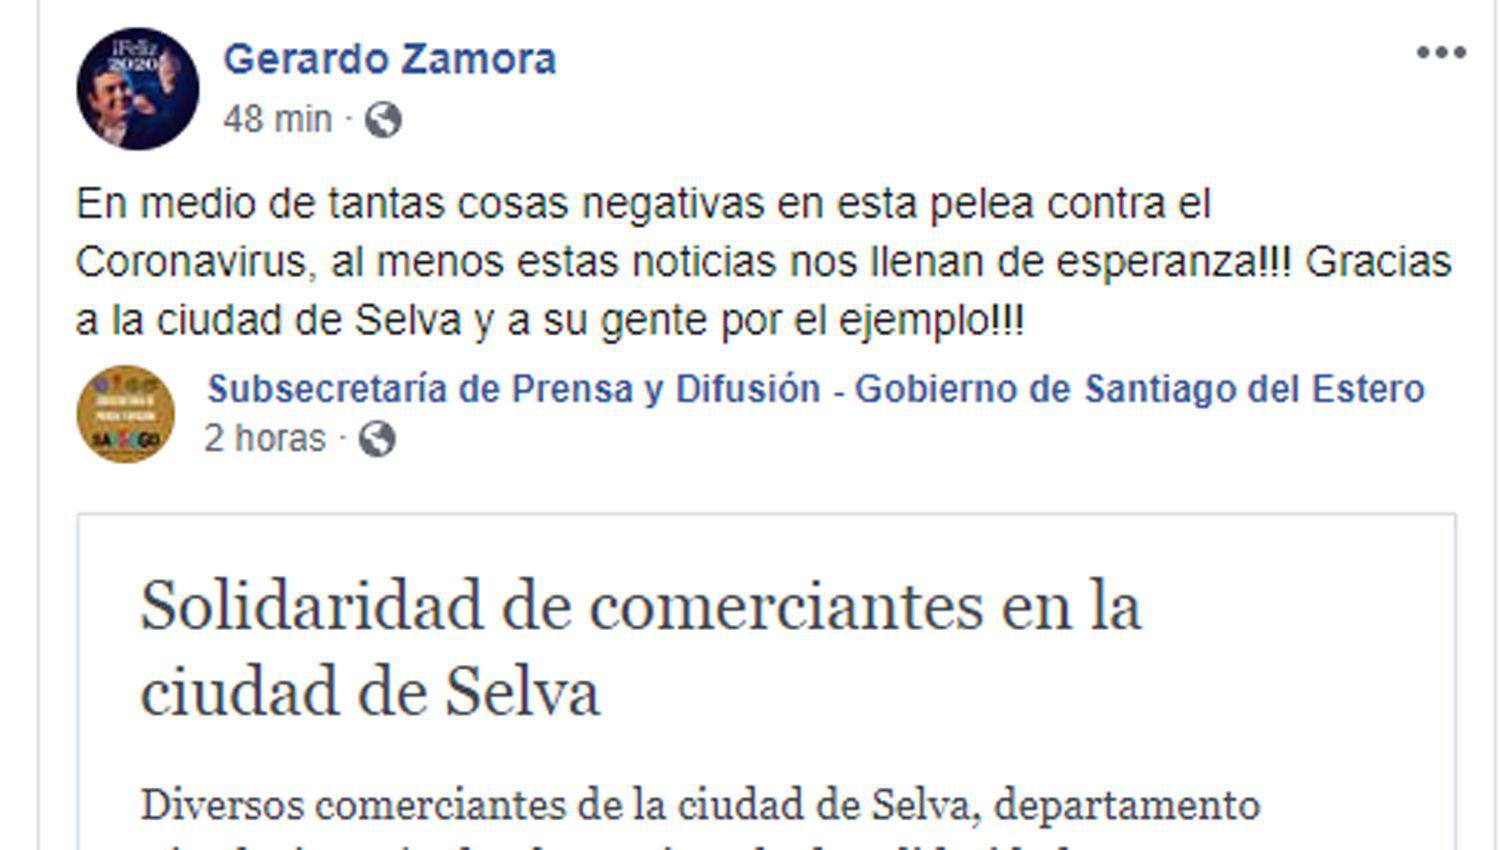 El gobernador Zamora felicitoacute a los vecinos de Selva